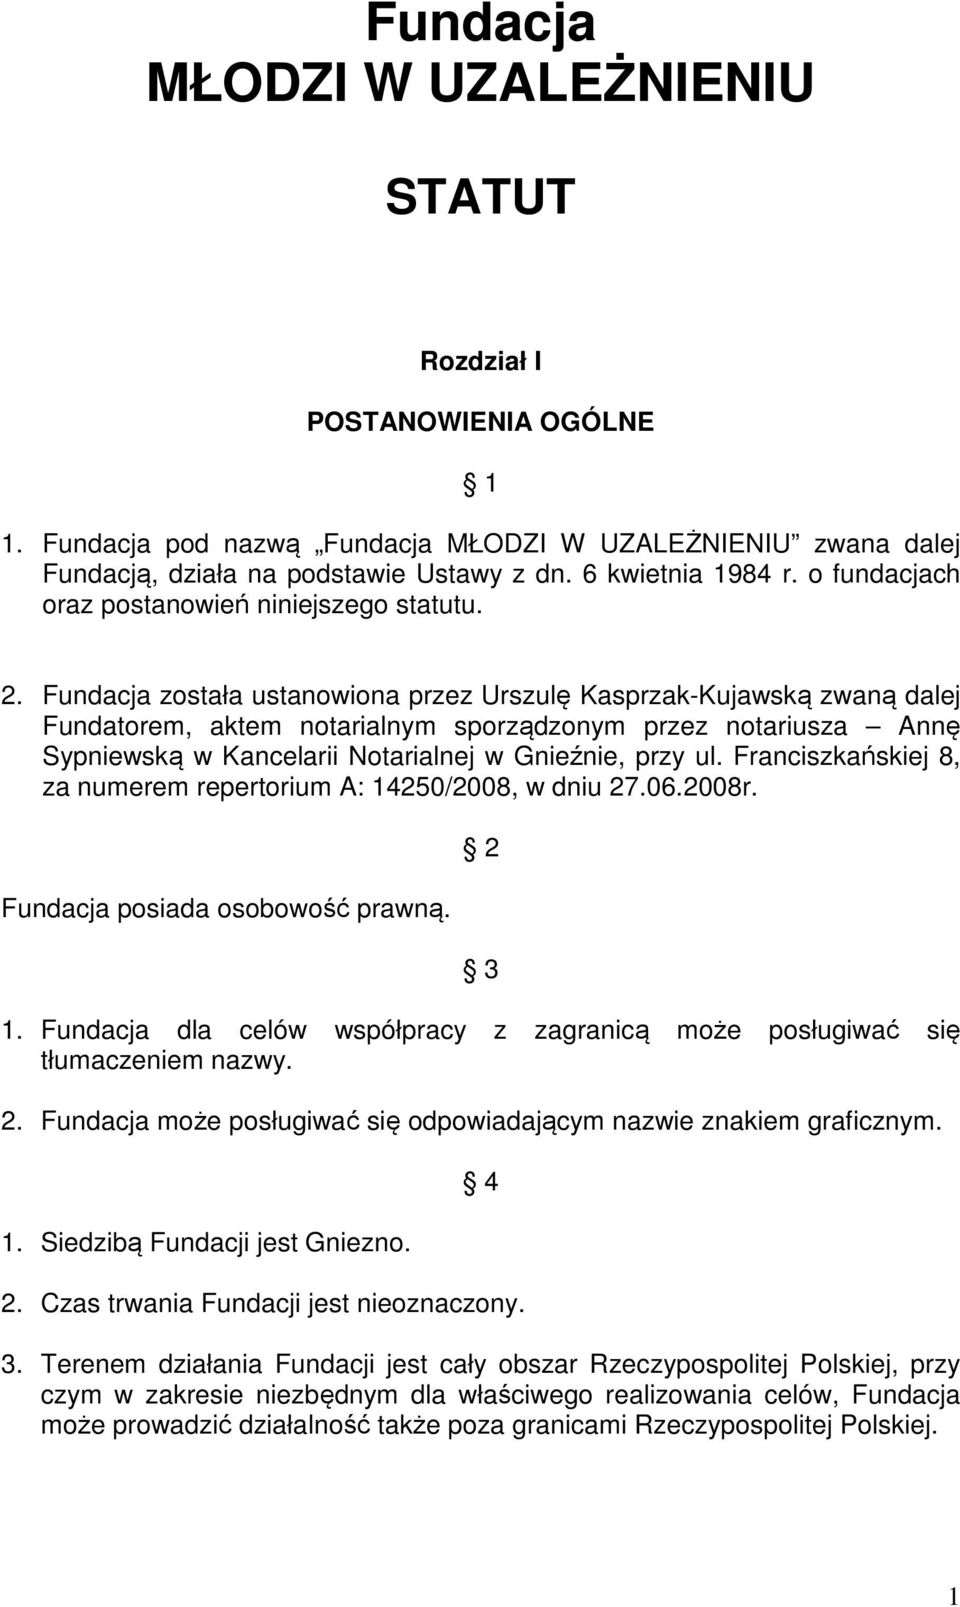 Fundacja została ustanowiona przez Urszulę Kasprzak-Kujawską zwaną dalej Fundatorem, aktem notarialnym sporządzonym przez notariusza Annę Sypniewską w Kancelarii Notarialnej w Gnieźnie, przy ul.